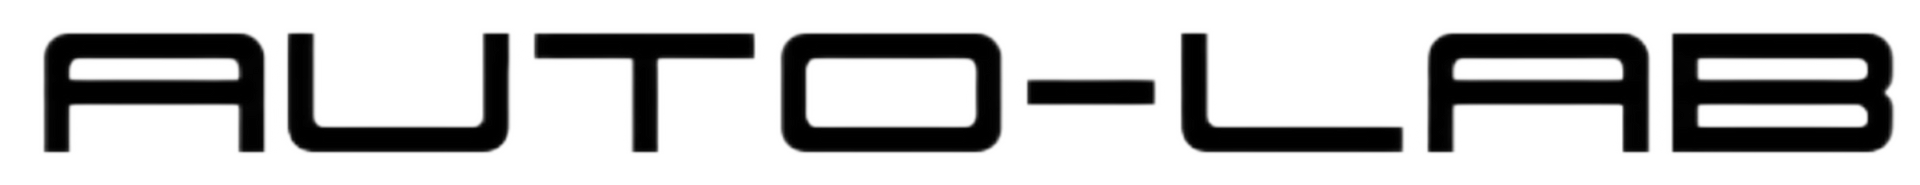 Cars Lab-logo